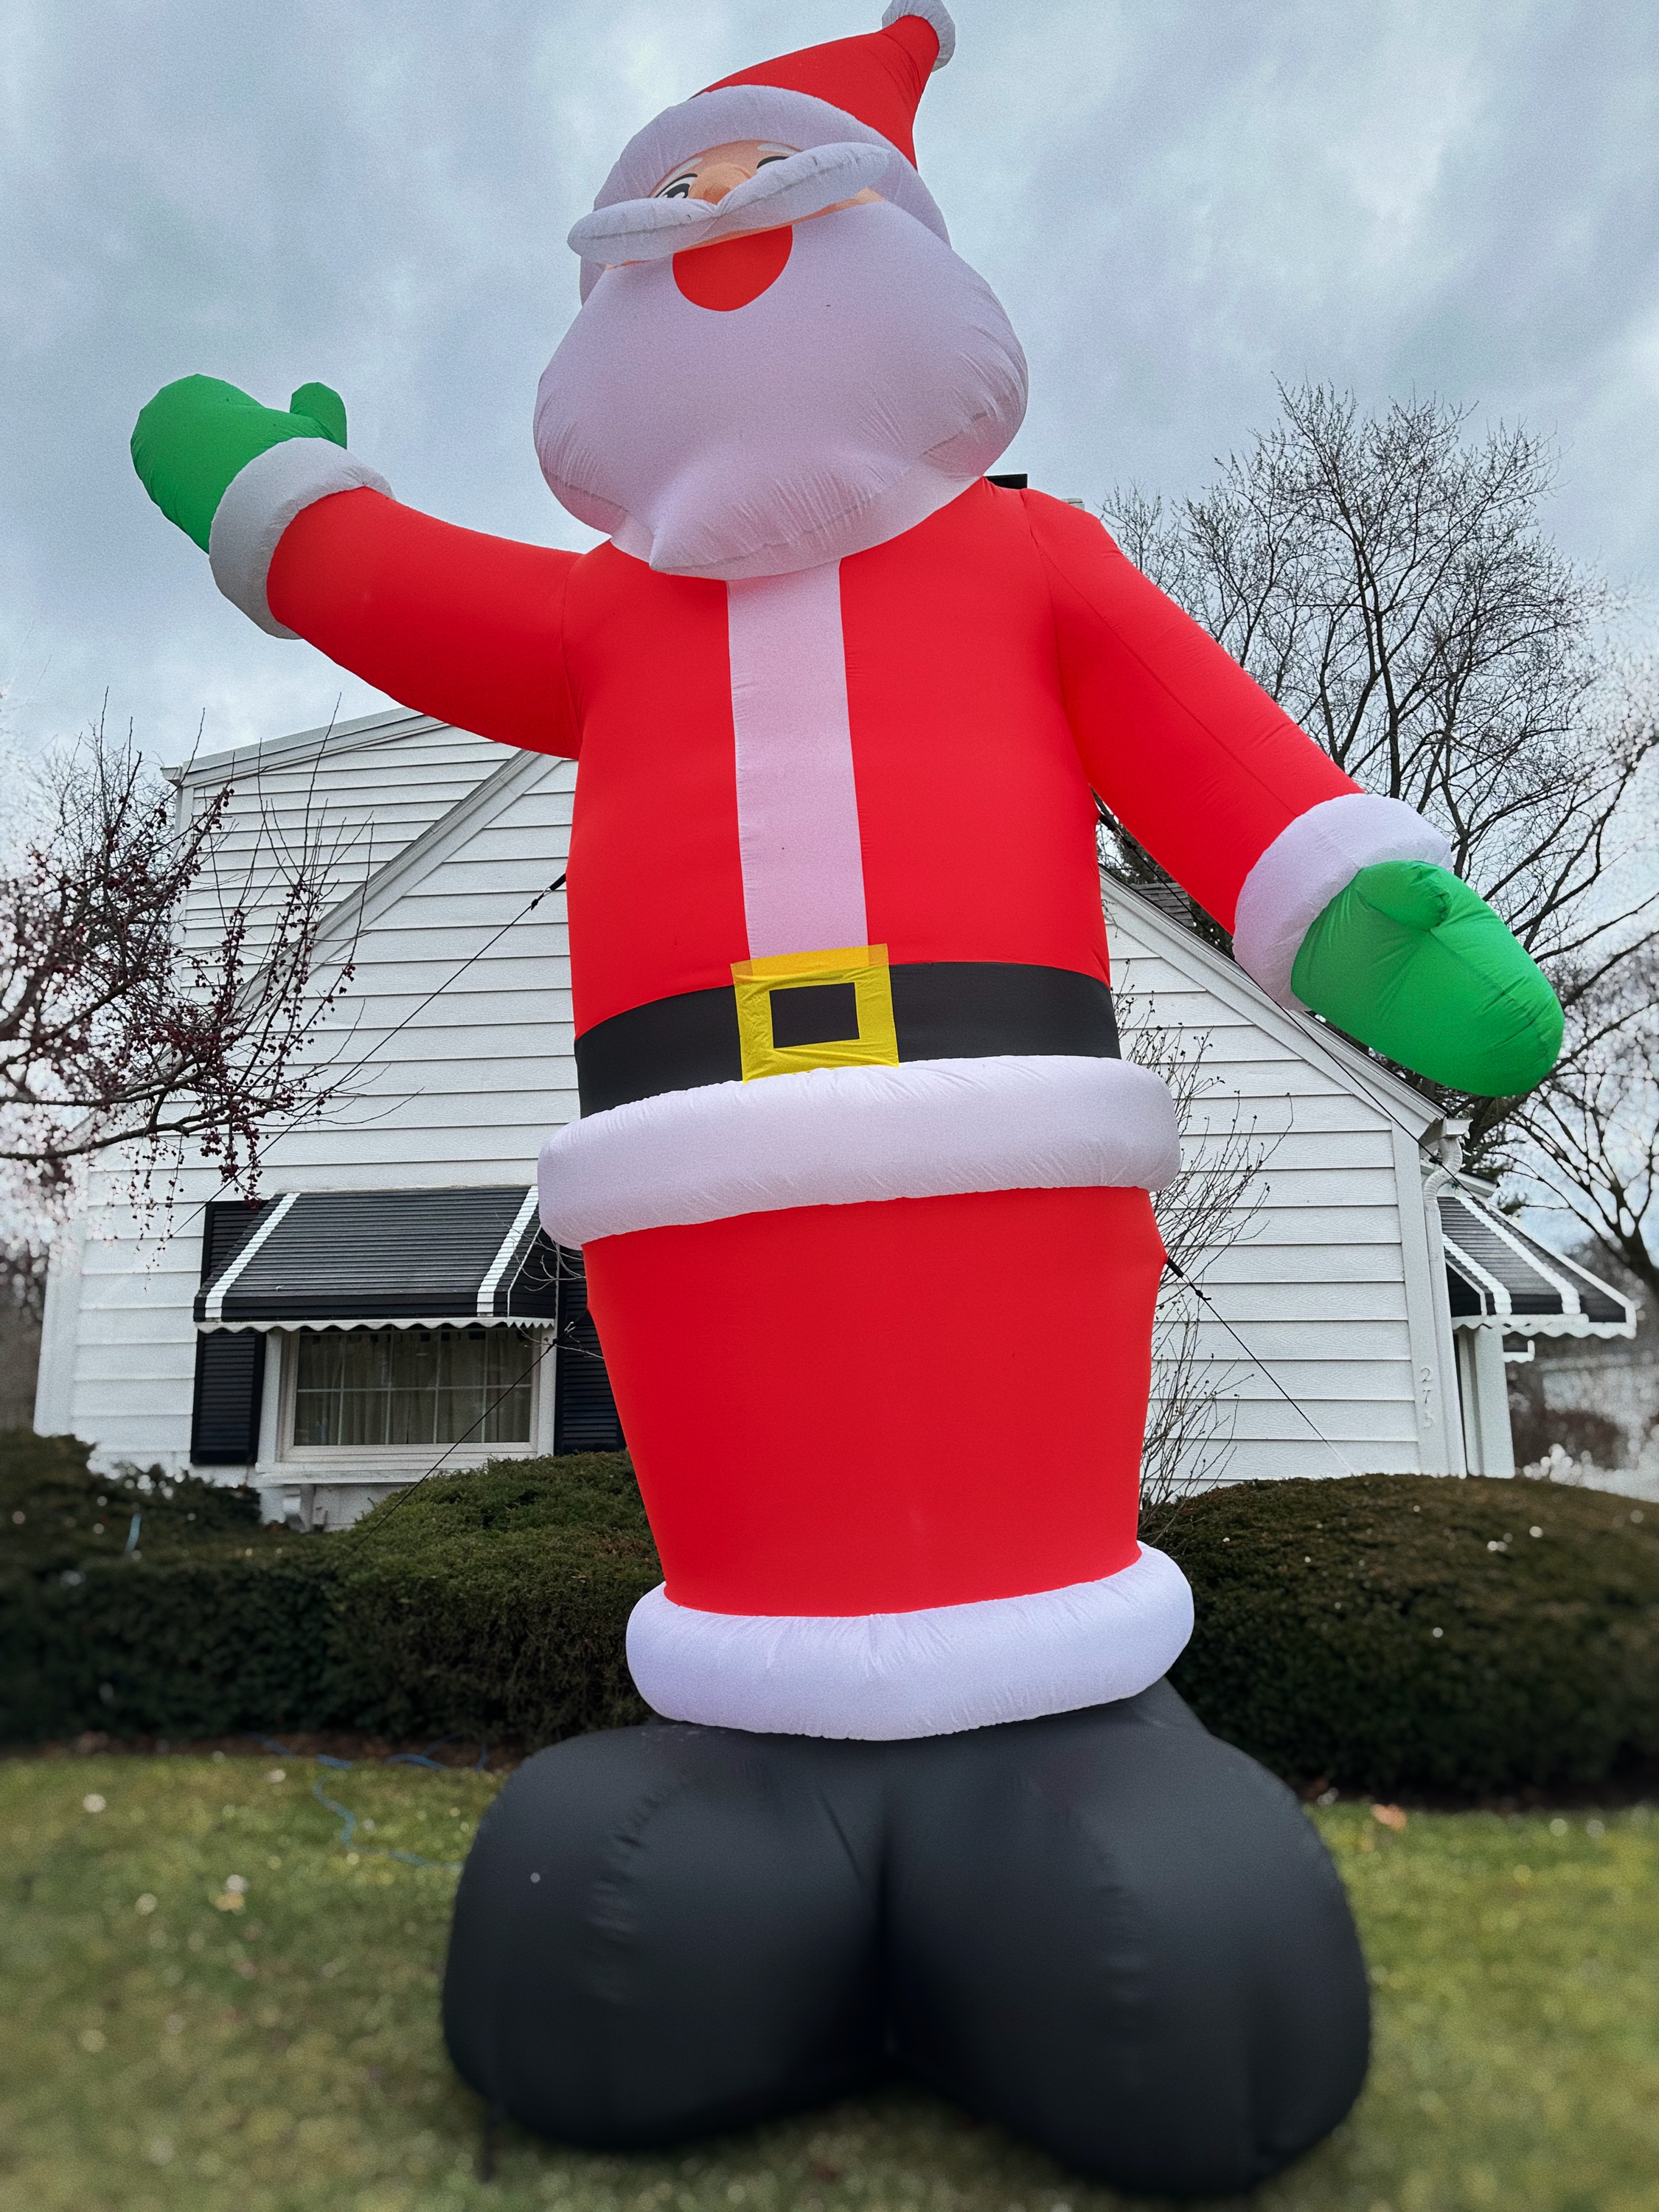 Gigantic inflatable Santa